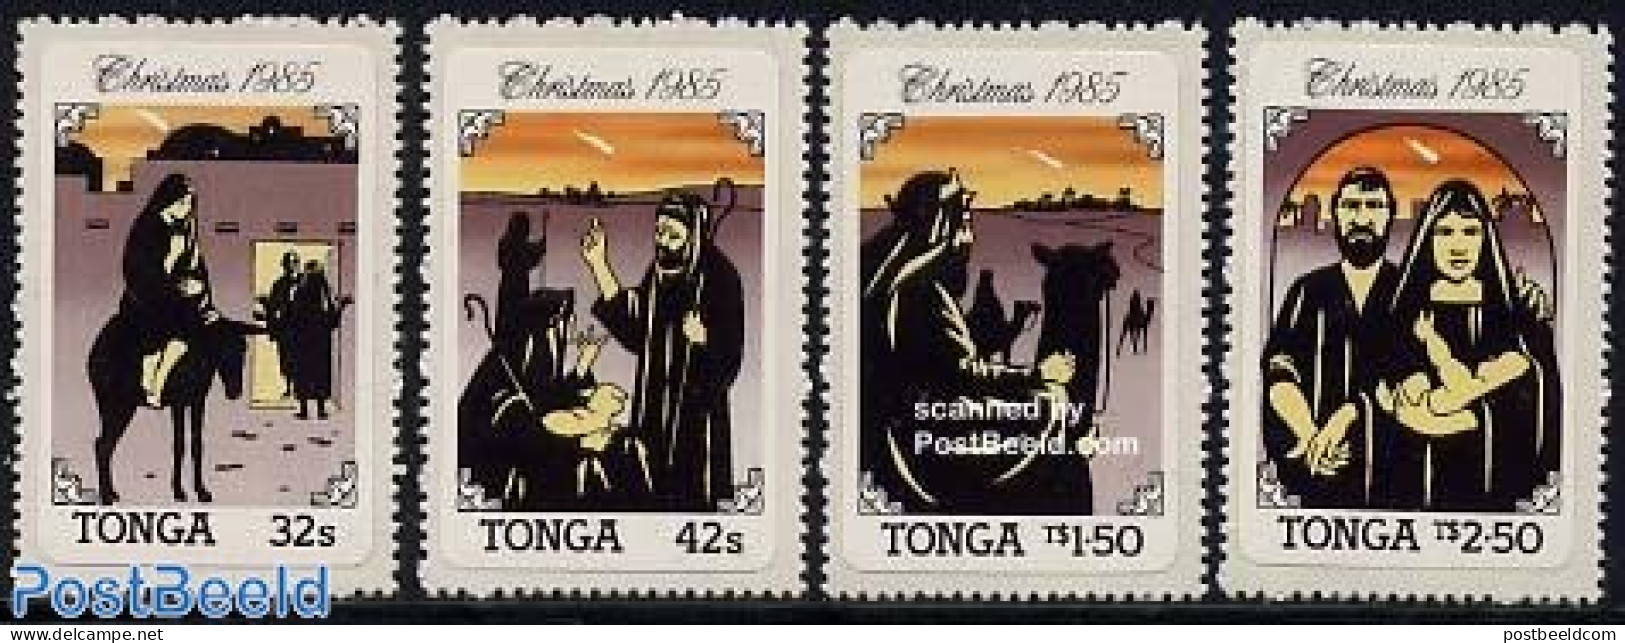 Tonga 1985 Christmas 4v, Mint NH, Religion - Christmas - Christmas